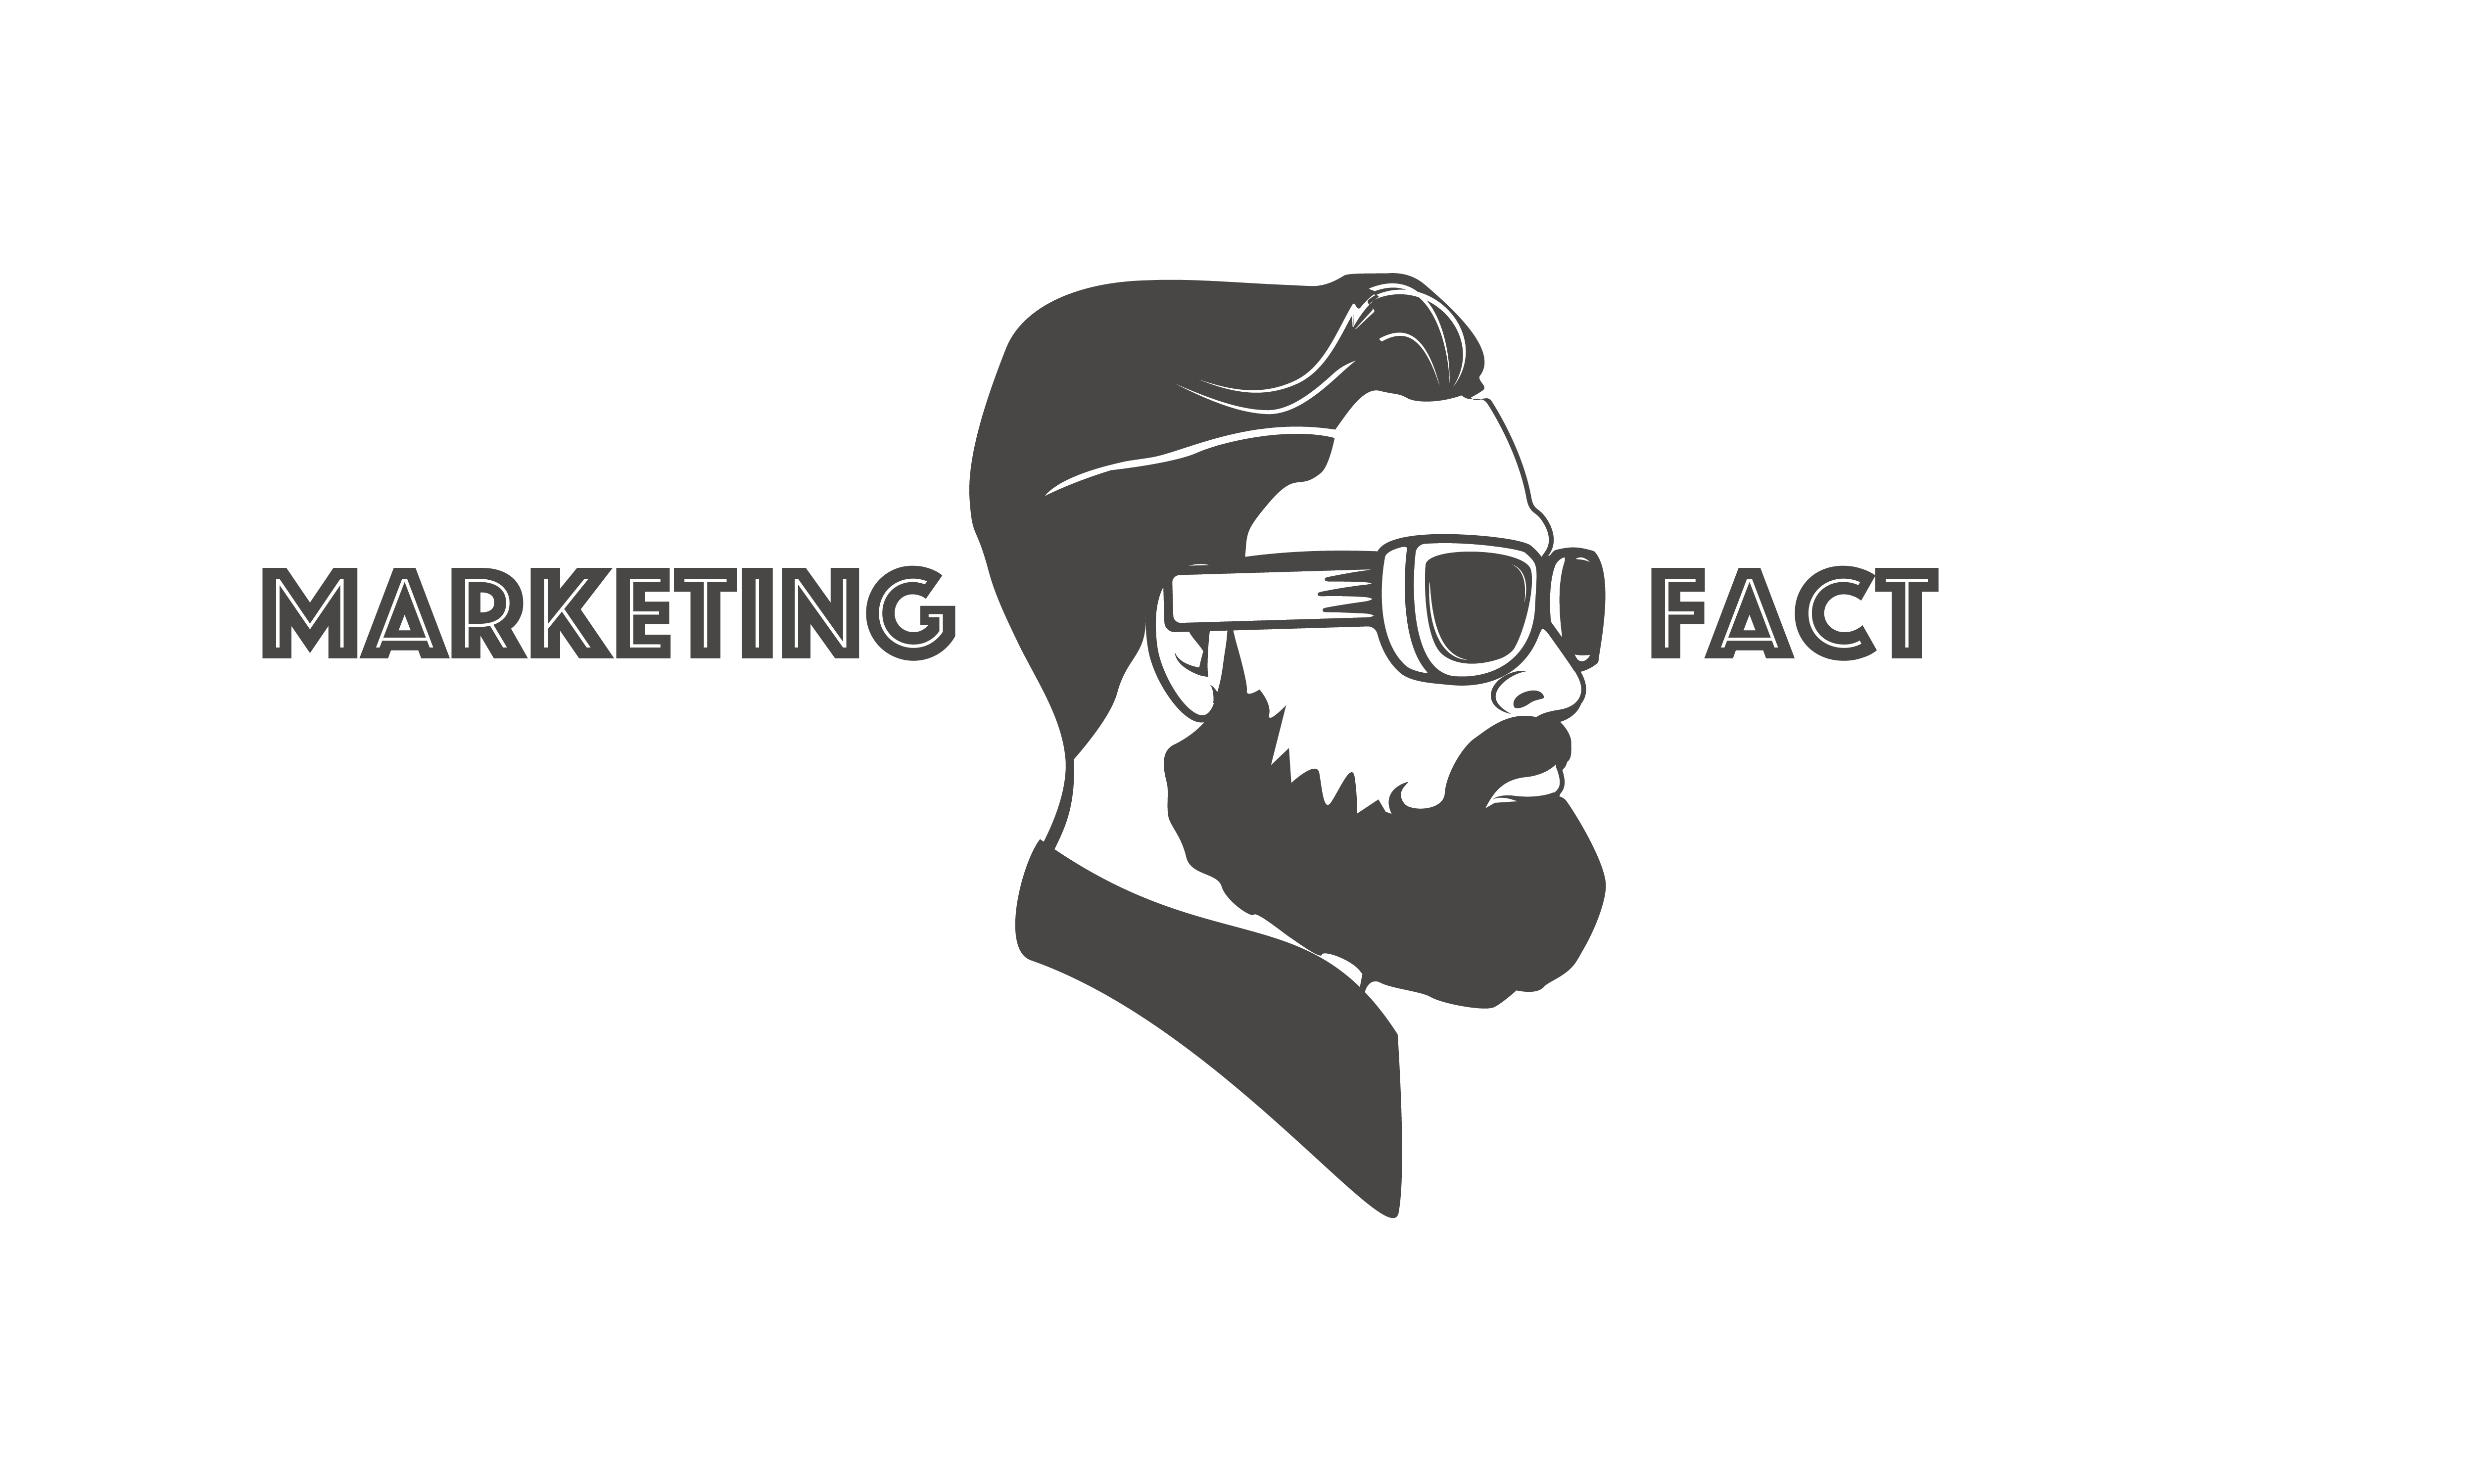 Marketingfact